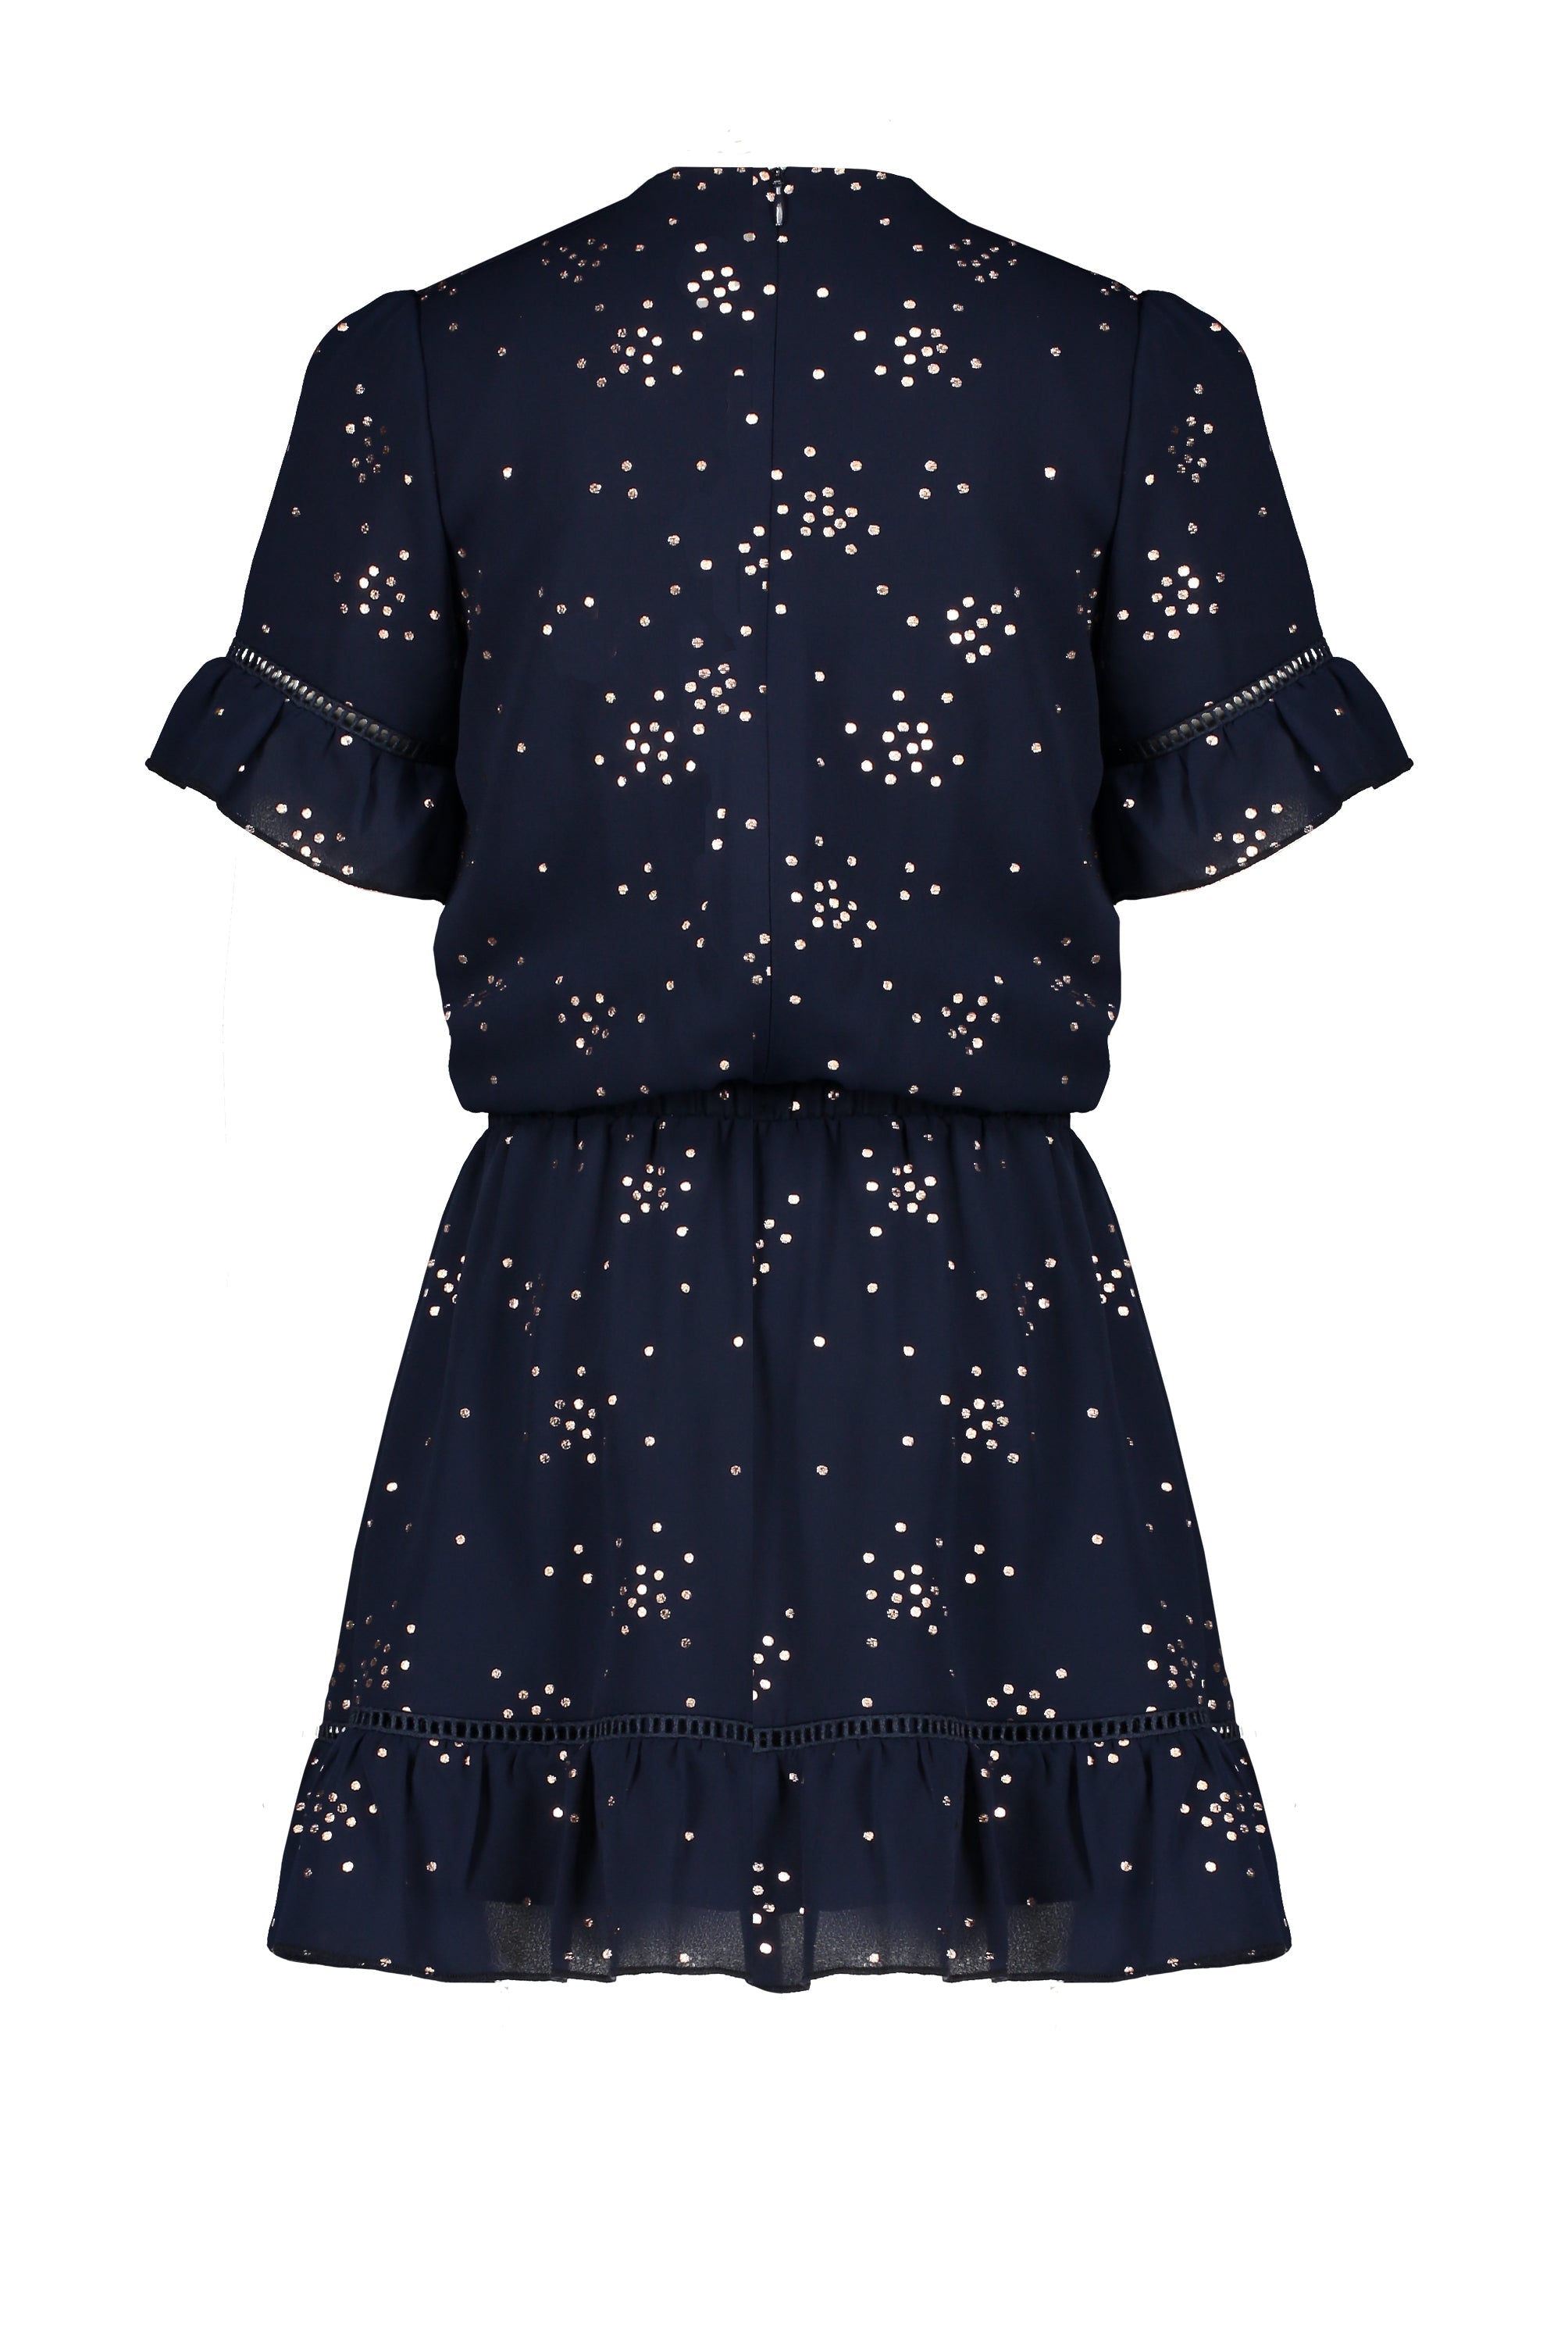 Meisjes Merel s/sl dress with crochet details van NoNo in de kleur Navy Blazer in maat 146/152.